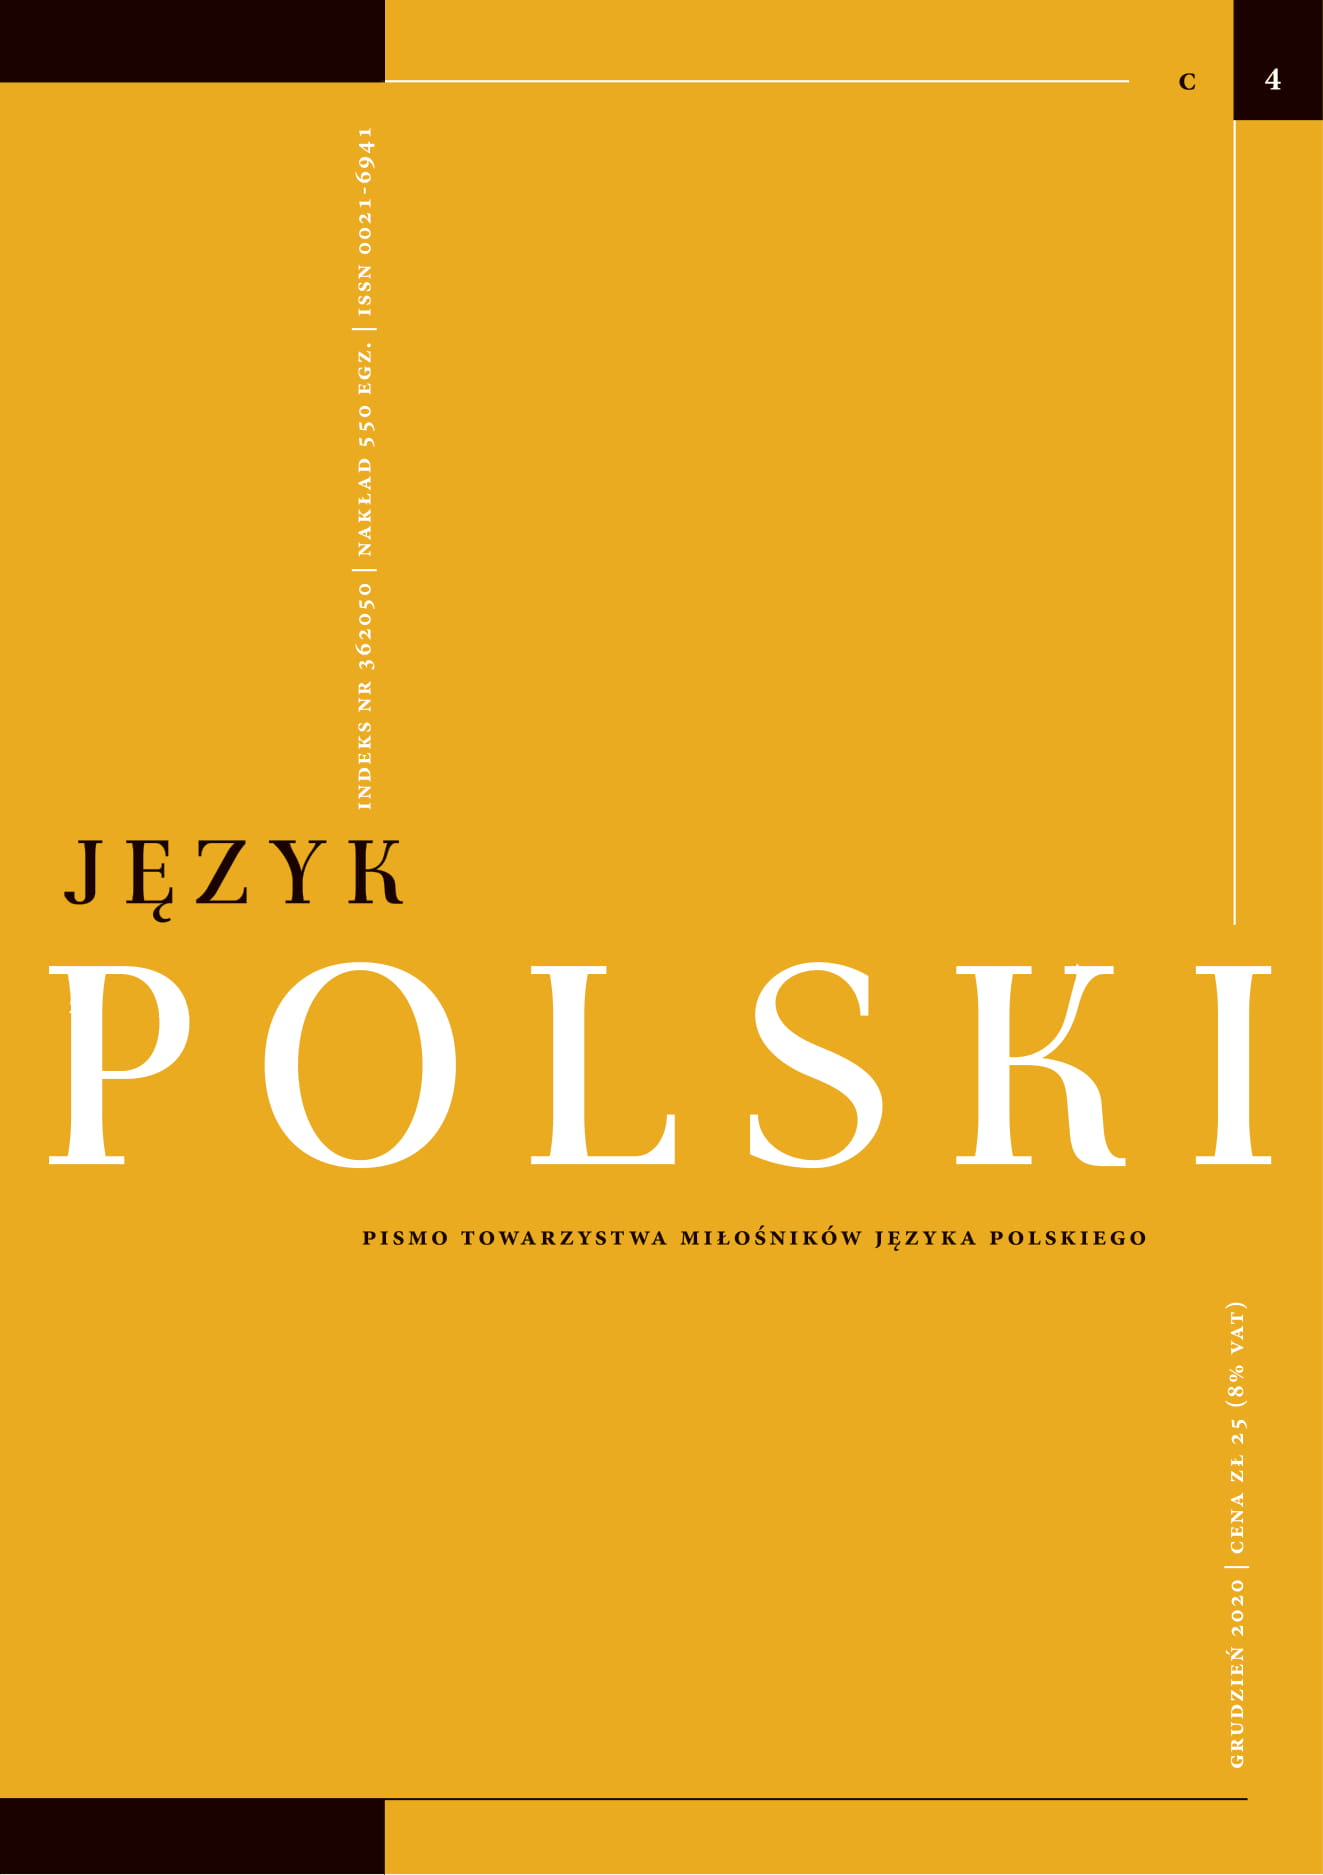 [review] Małgorzata Gębka-Wolak, Andrzej Moroz, Jednostka tekstu prawnego w ujęciu teoretycznym i praktycznym Cover Image